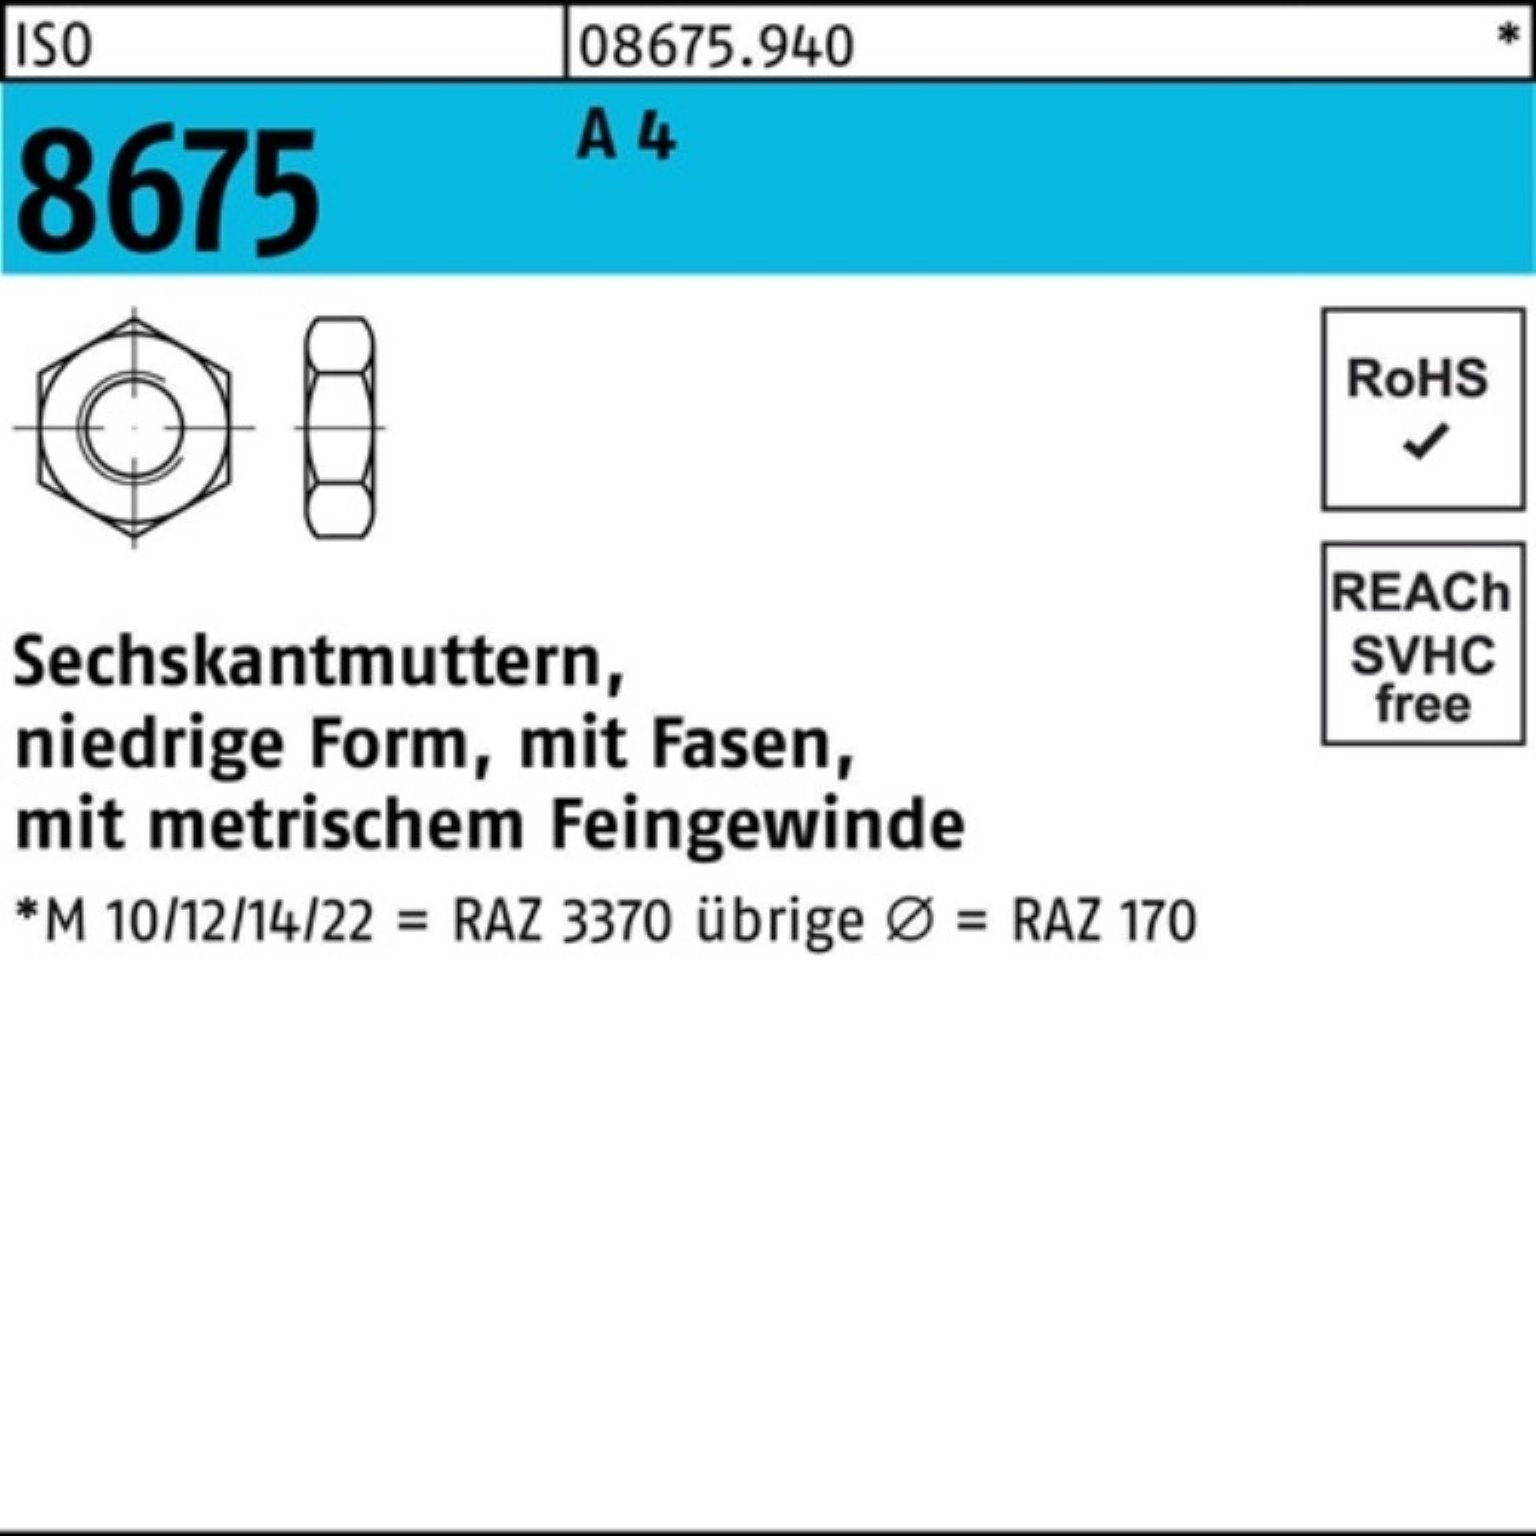 Reyher Sechskantmutter Pack A 867 10 Stück Muttern 4 100er M24x 8675 ISO Fasen 2 ISO